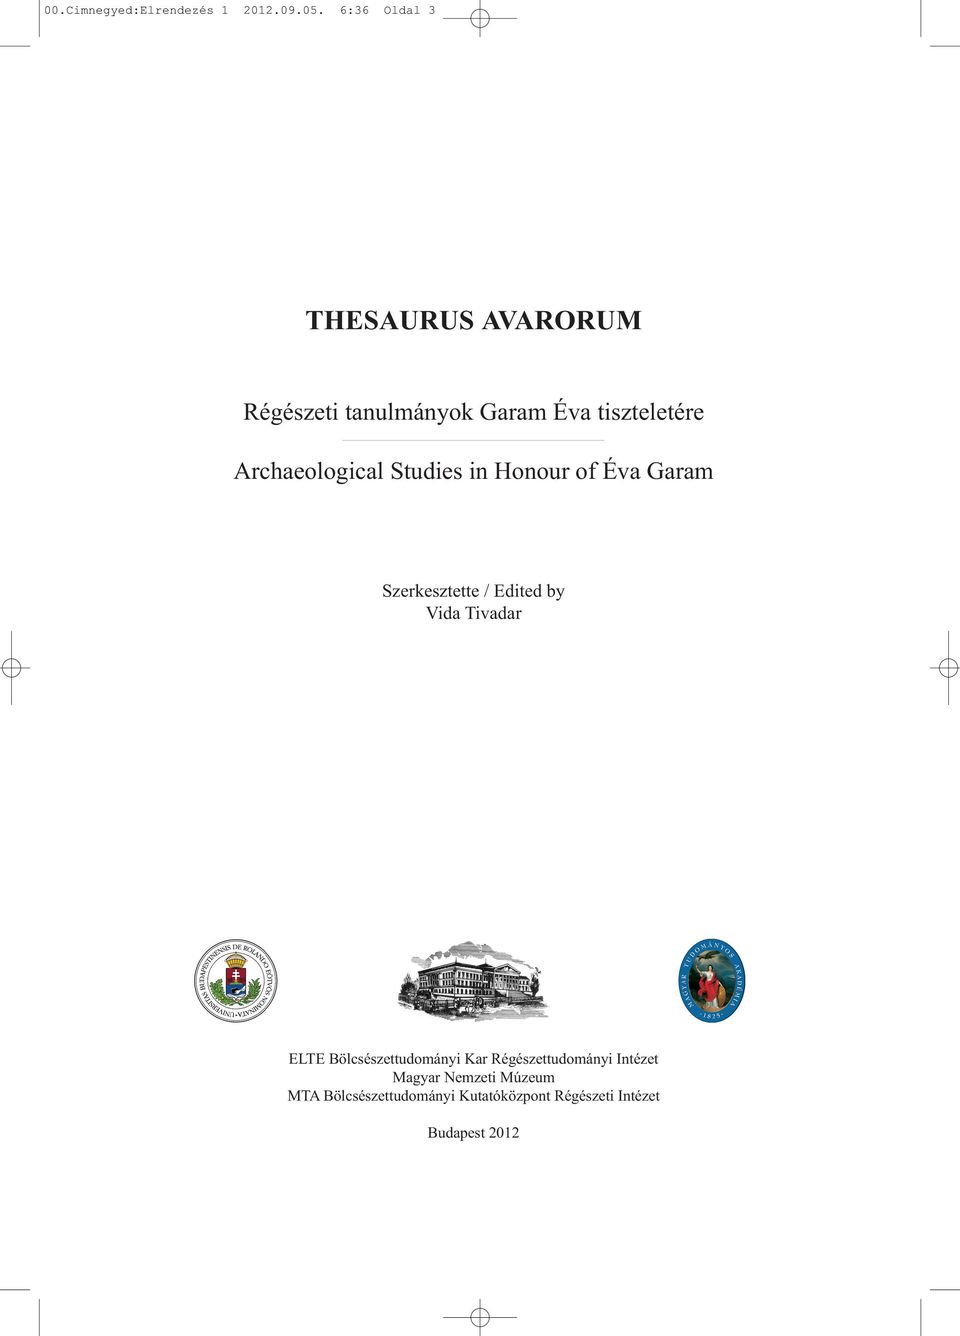 Archaeological Studies in Honour of Éva Garam Szerkesztette / Edited by Vida Tivadar